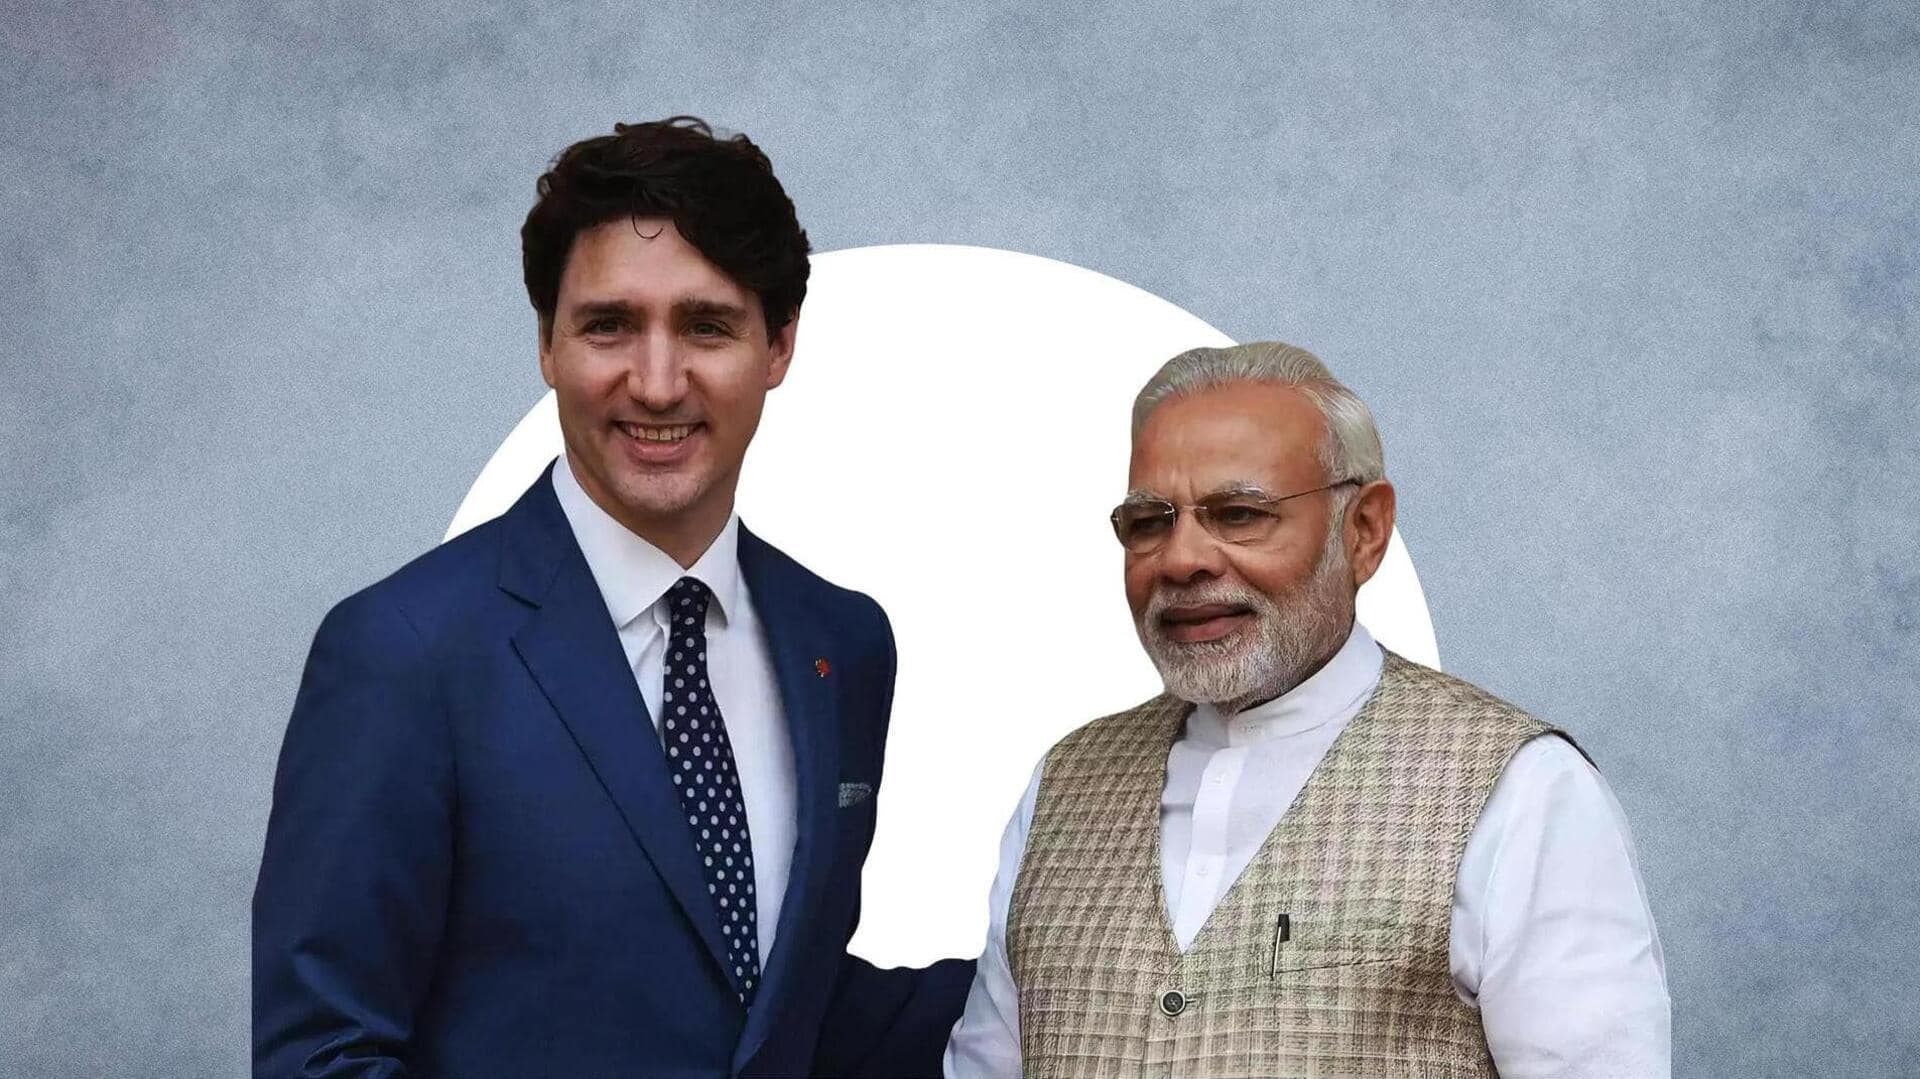 भारत ने कनाडा के चुनावों में नहीं किया था हस्तक्षेप, जांच आयोग की रिपोर्ट में खुलासा